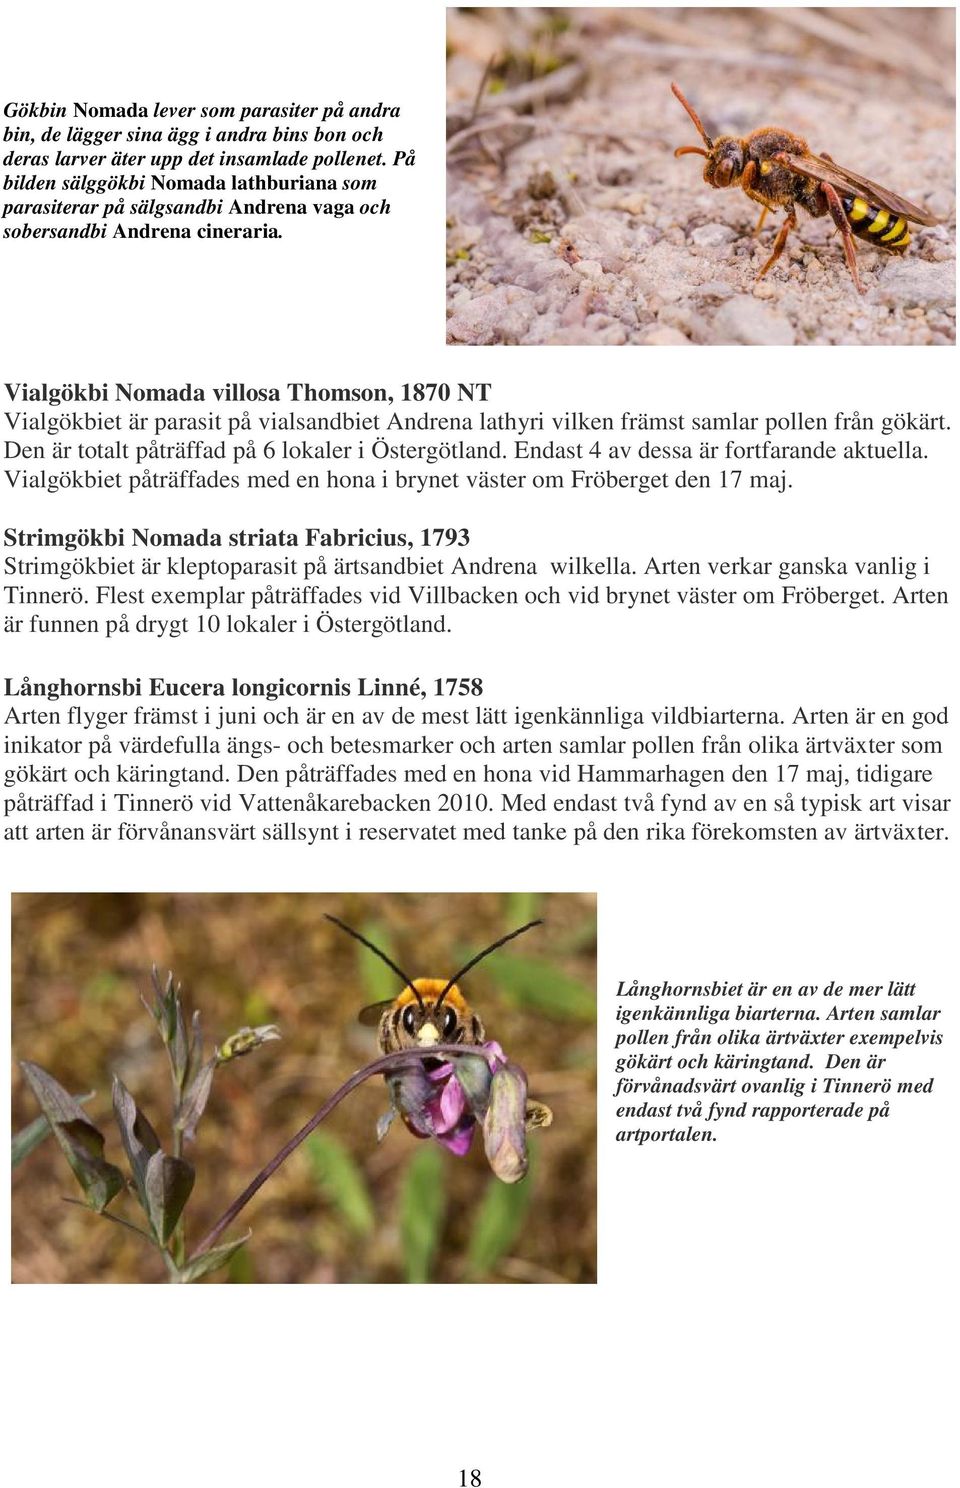 Vialgökbi Nomada villosa Thomson, 1870 NT Vialgökbiet är parasit på vialsandbiet Andrena lathyri vilken främst samlar pollen från gökärt. Den är totalt påträffad på 6 lokaler i Östergötland.